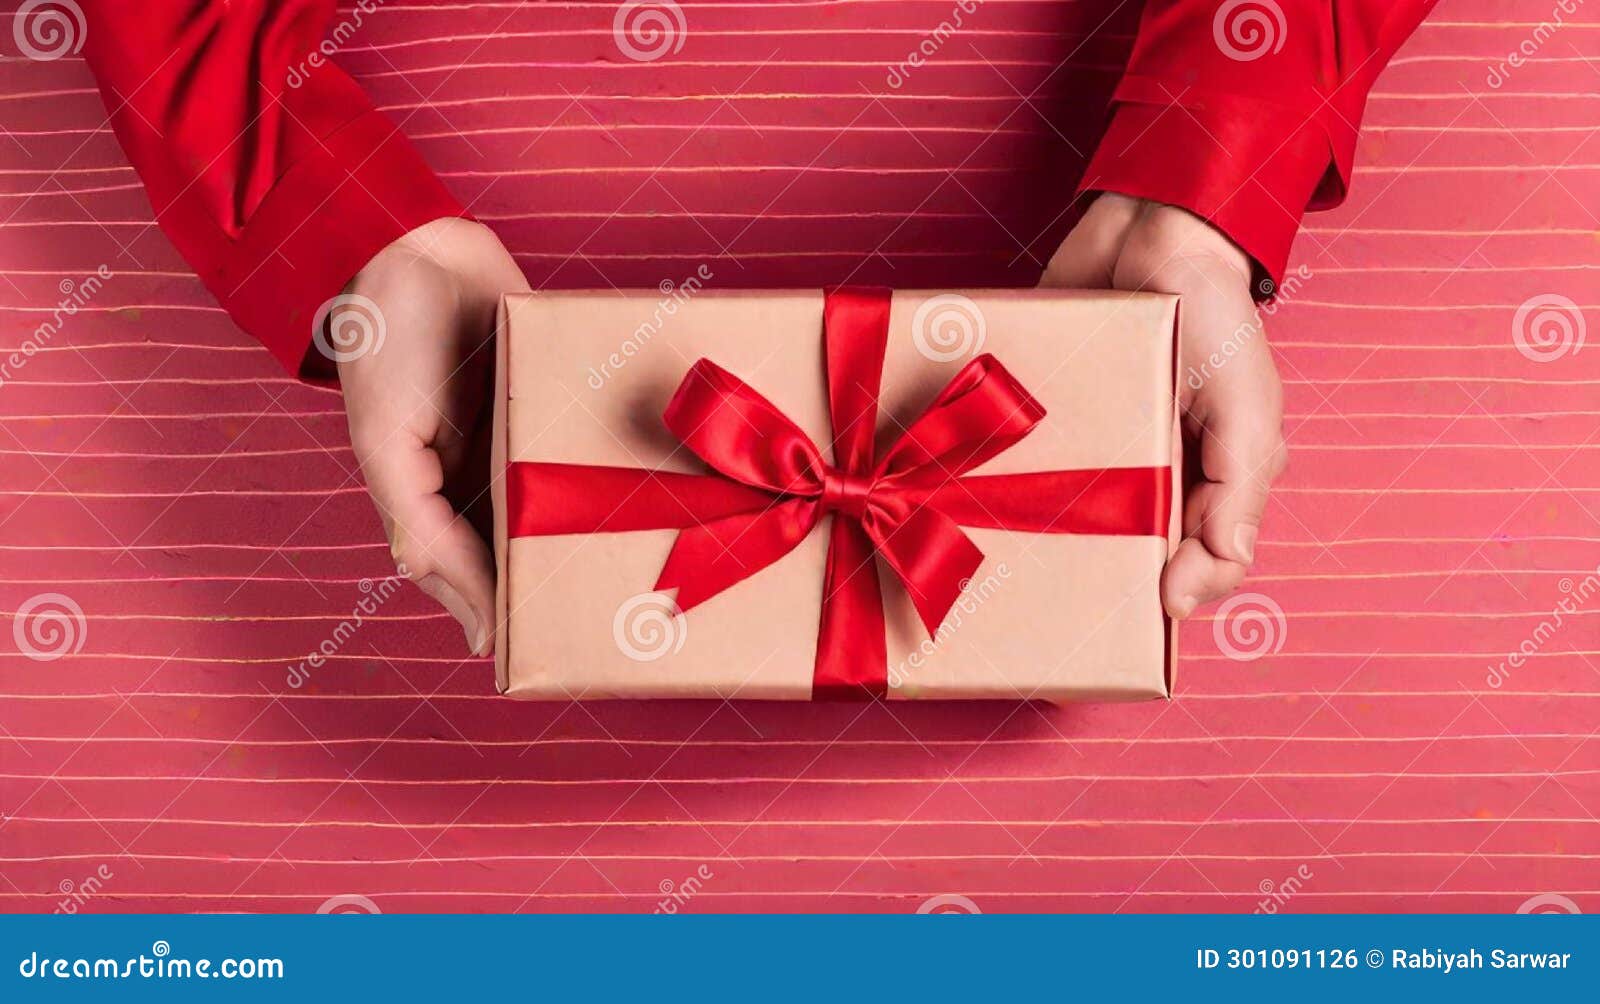 mano sosteniendo una caja de regalo roja con lazo escarlata sobre fondo carmesÃ­